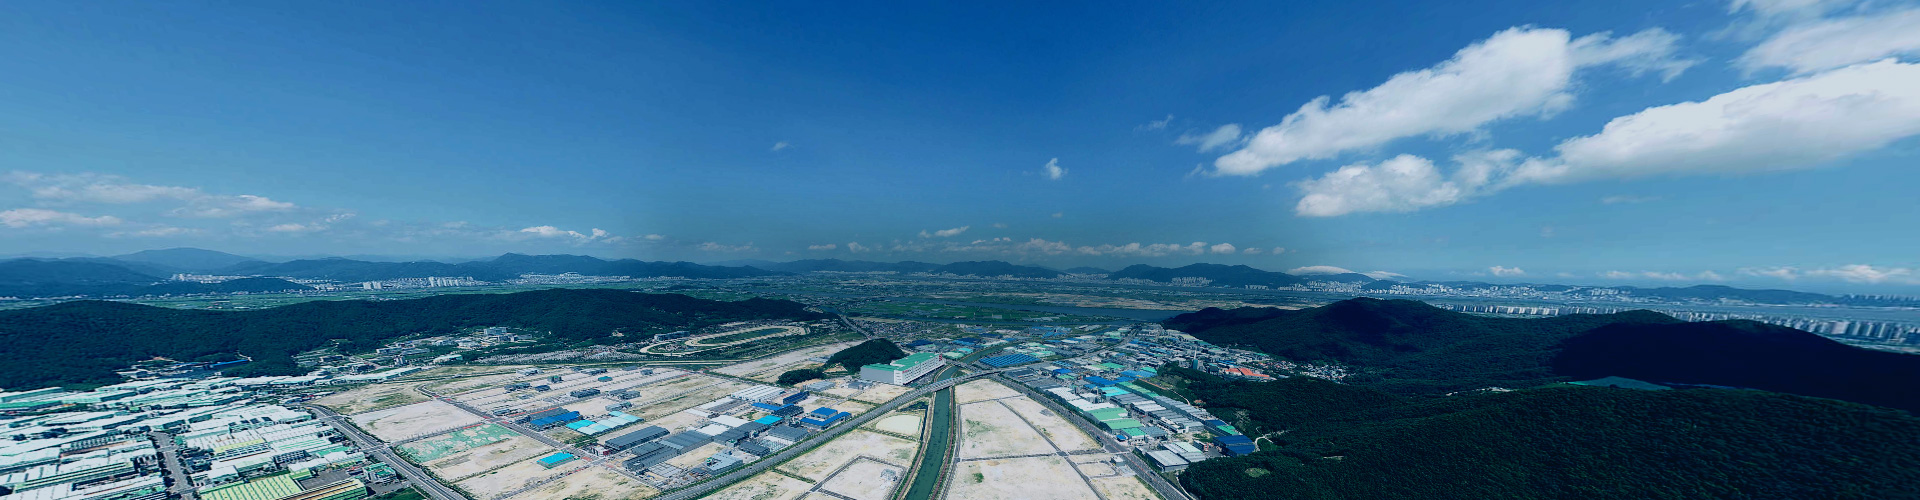 機会と成功の場所、釜山鎮海経済自由区域